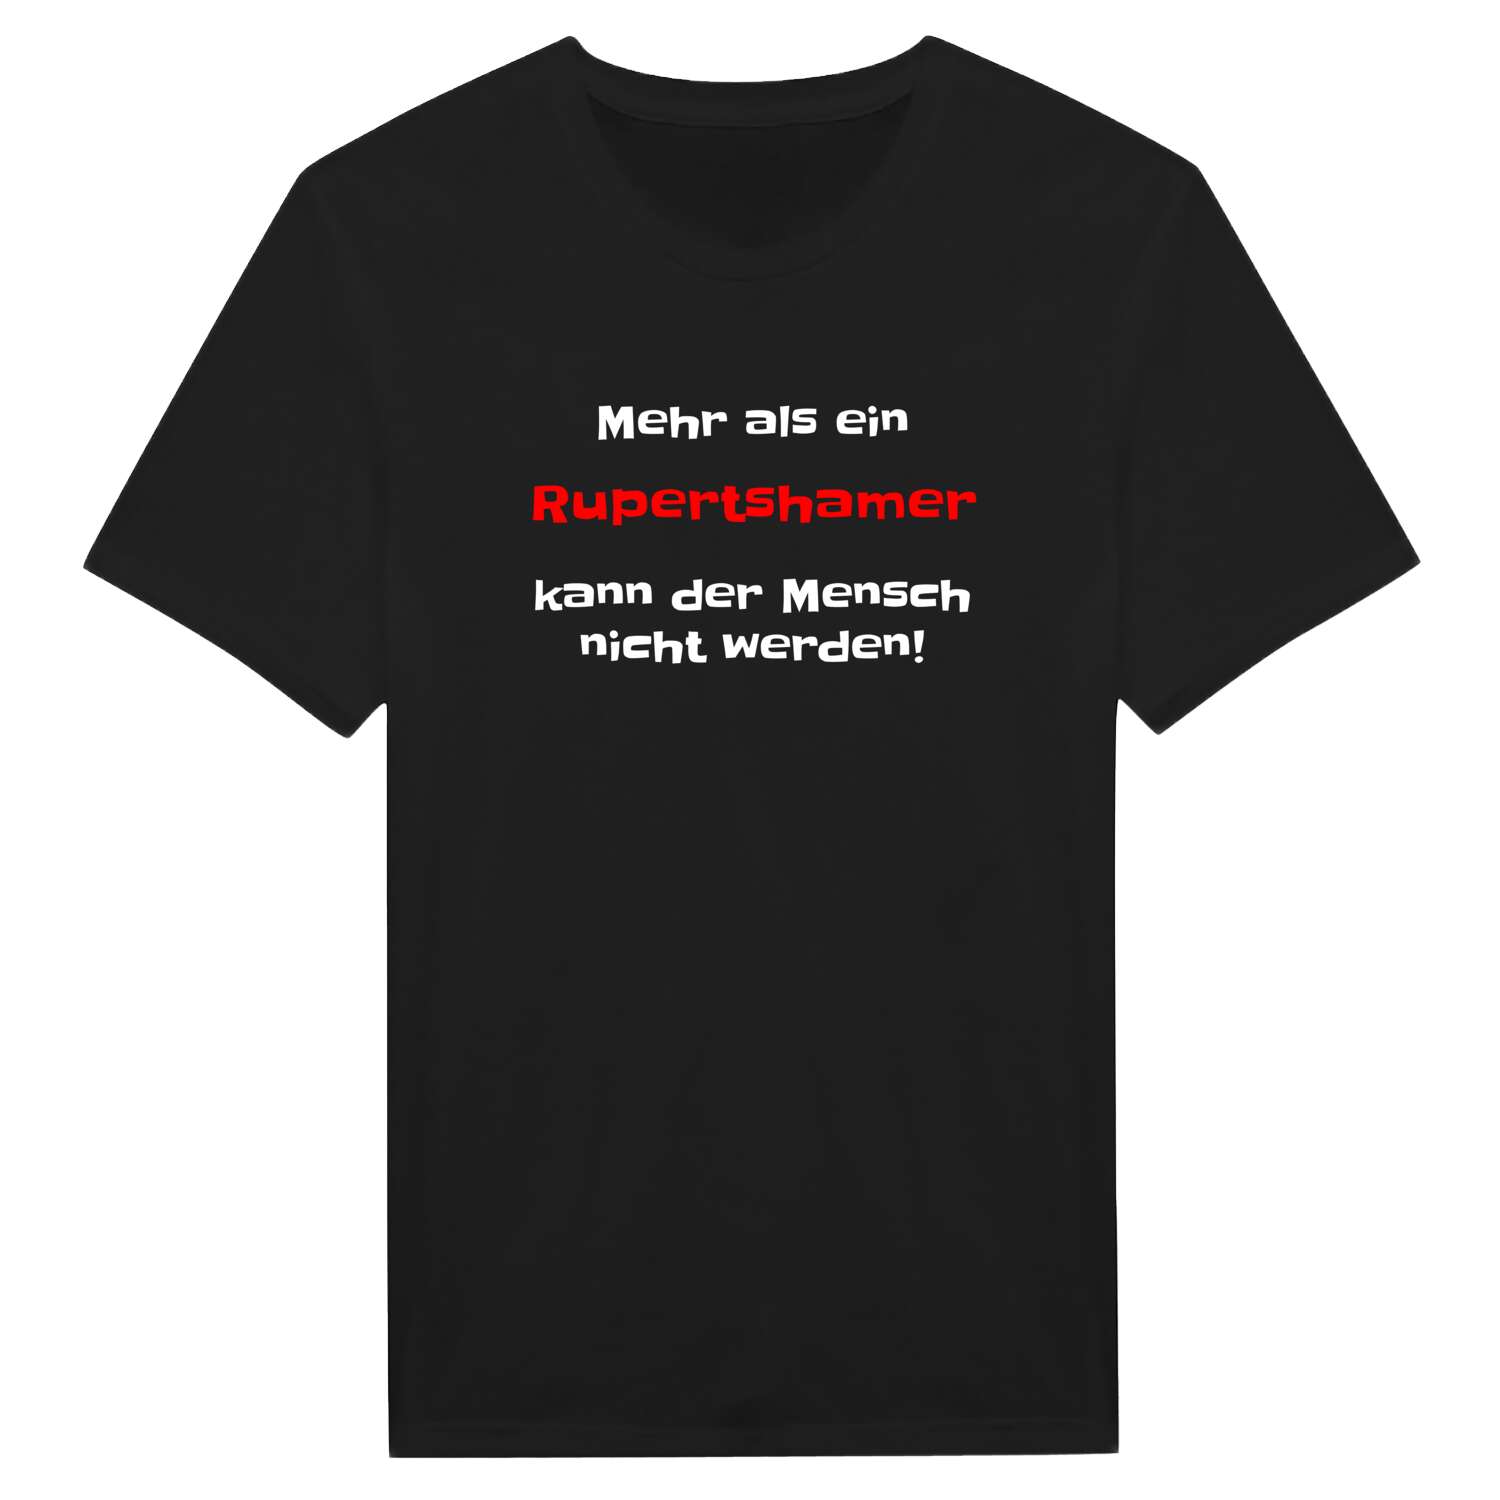 Rupertsham T-Shirt »Mehr als ein«